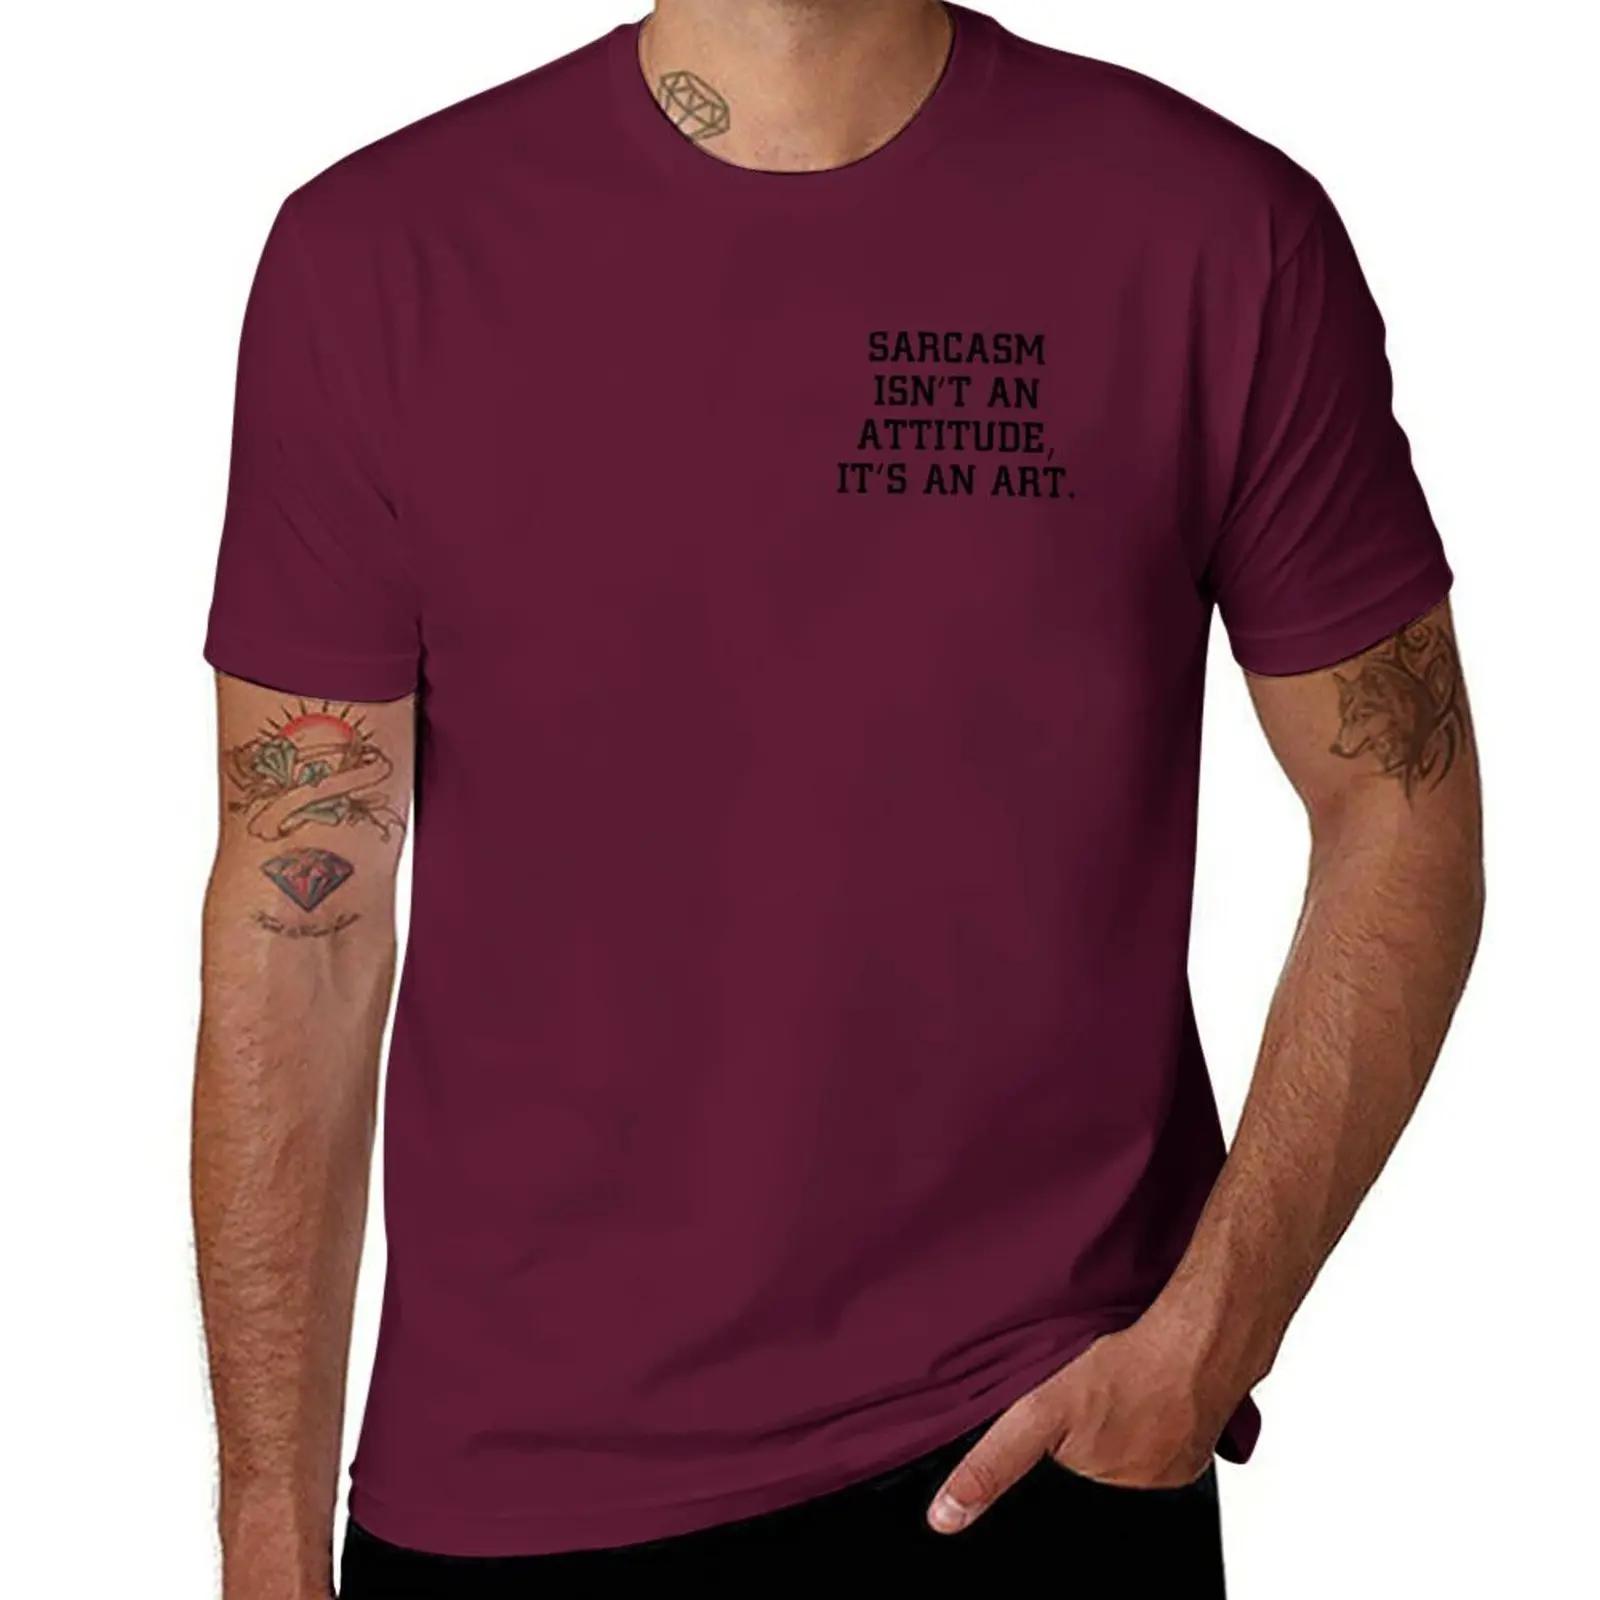 신상 Sarcasm Int An Attitude 티셔츠, 빠른 건조 티셔츠, 심미적 의류, 남성 키 큰 티셔츠